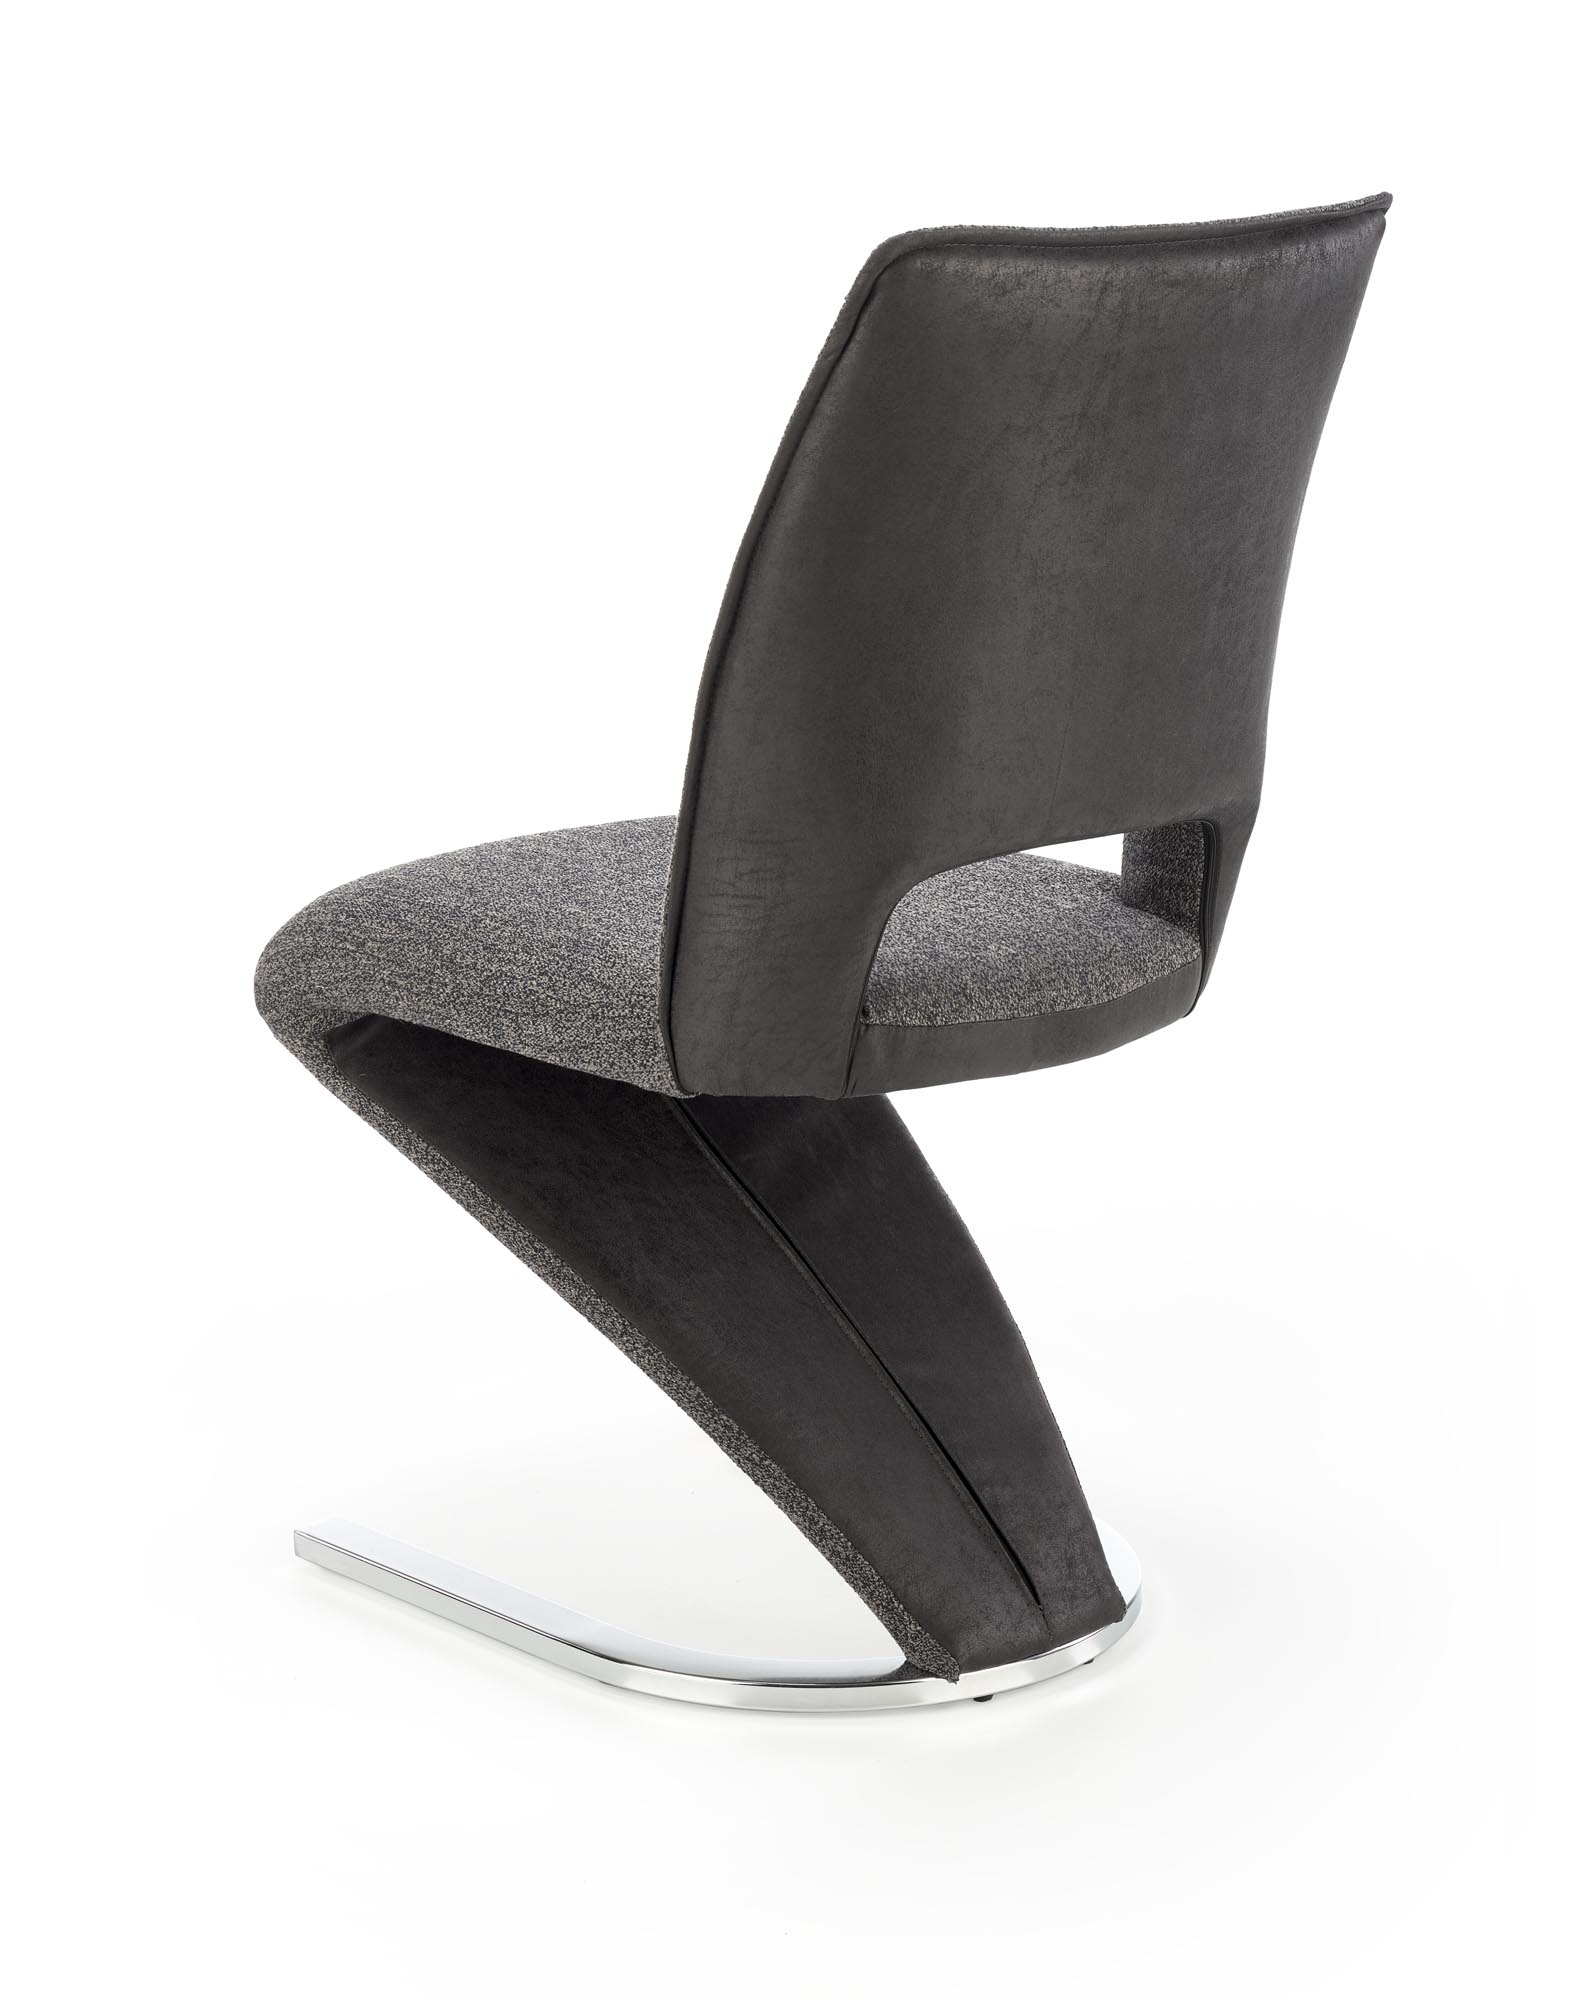 K441 stolica, boja: siva / crna